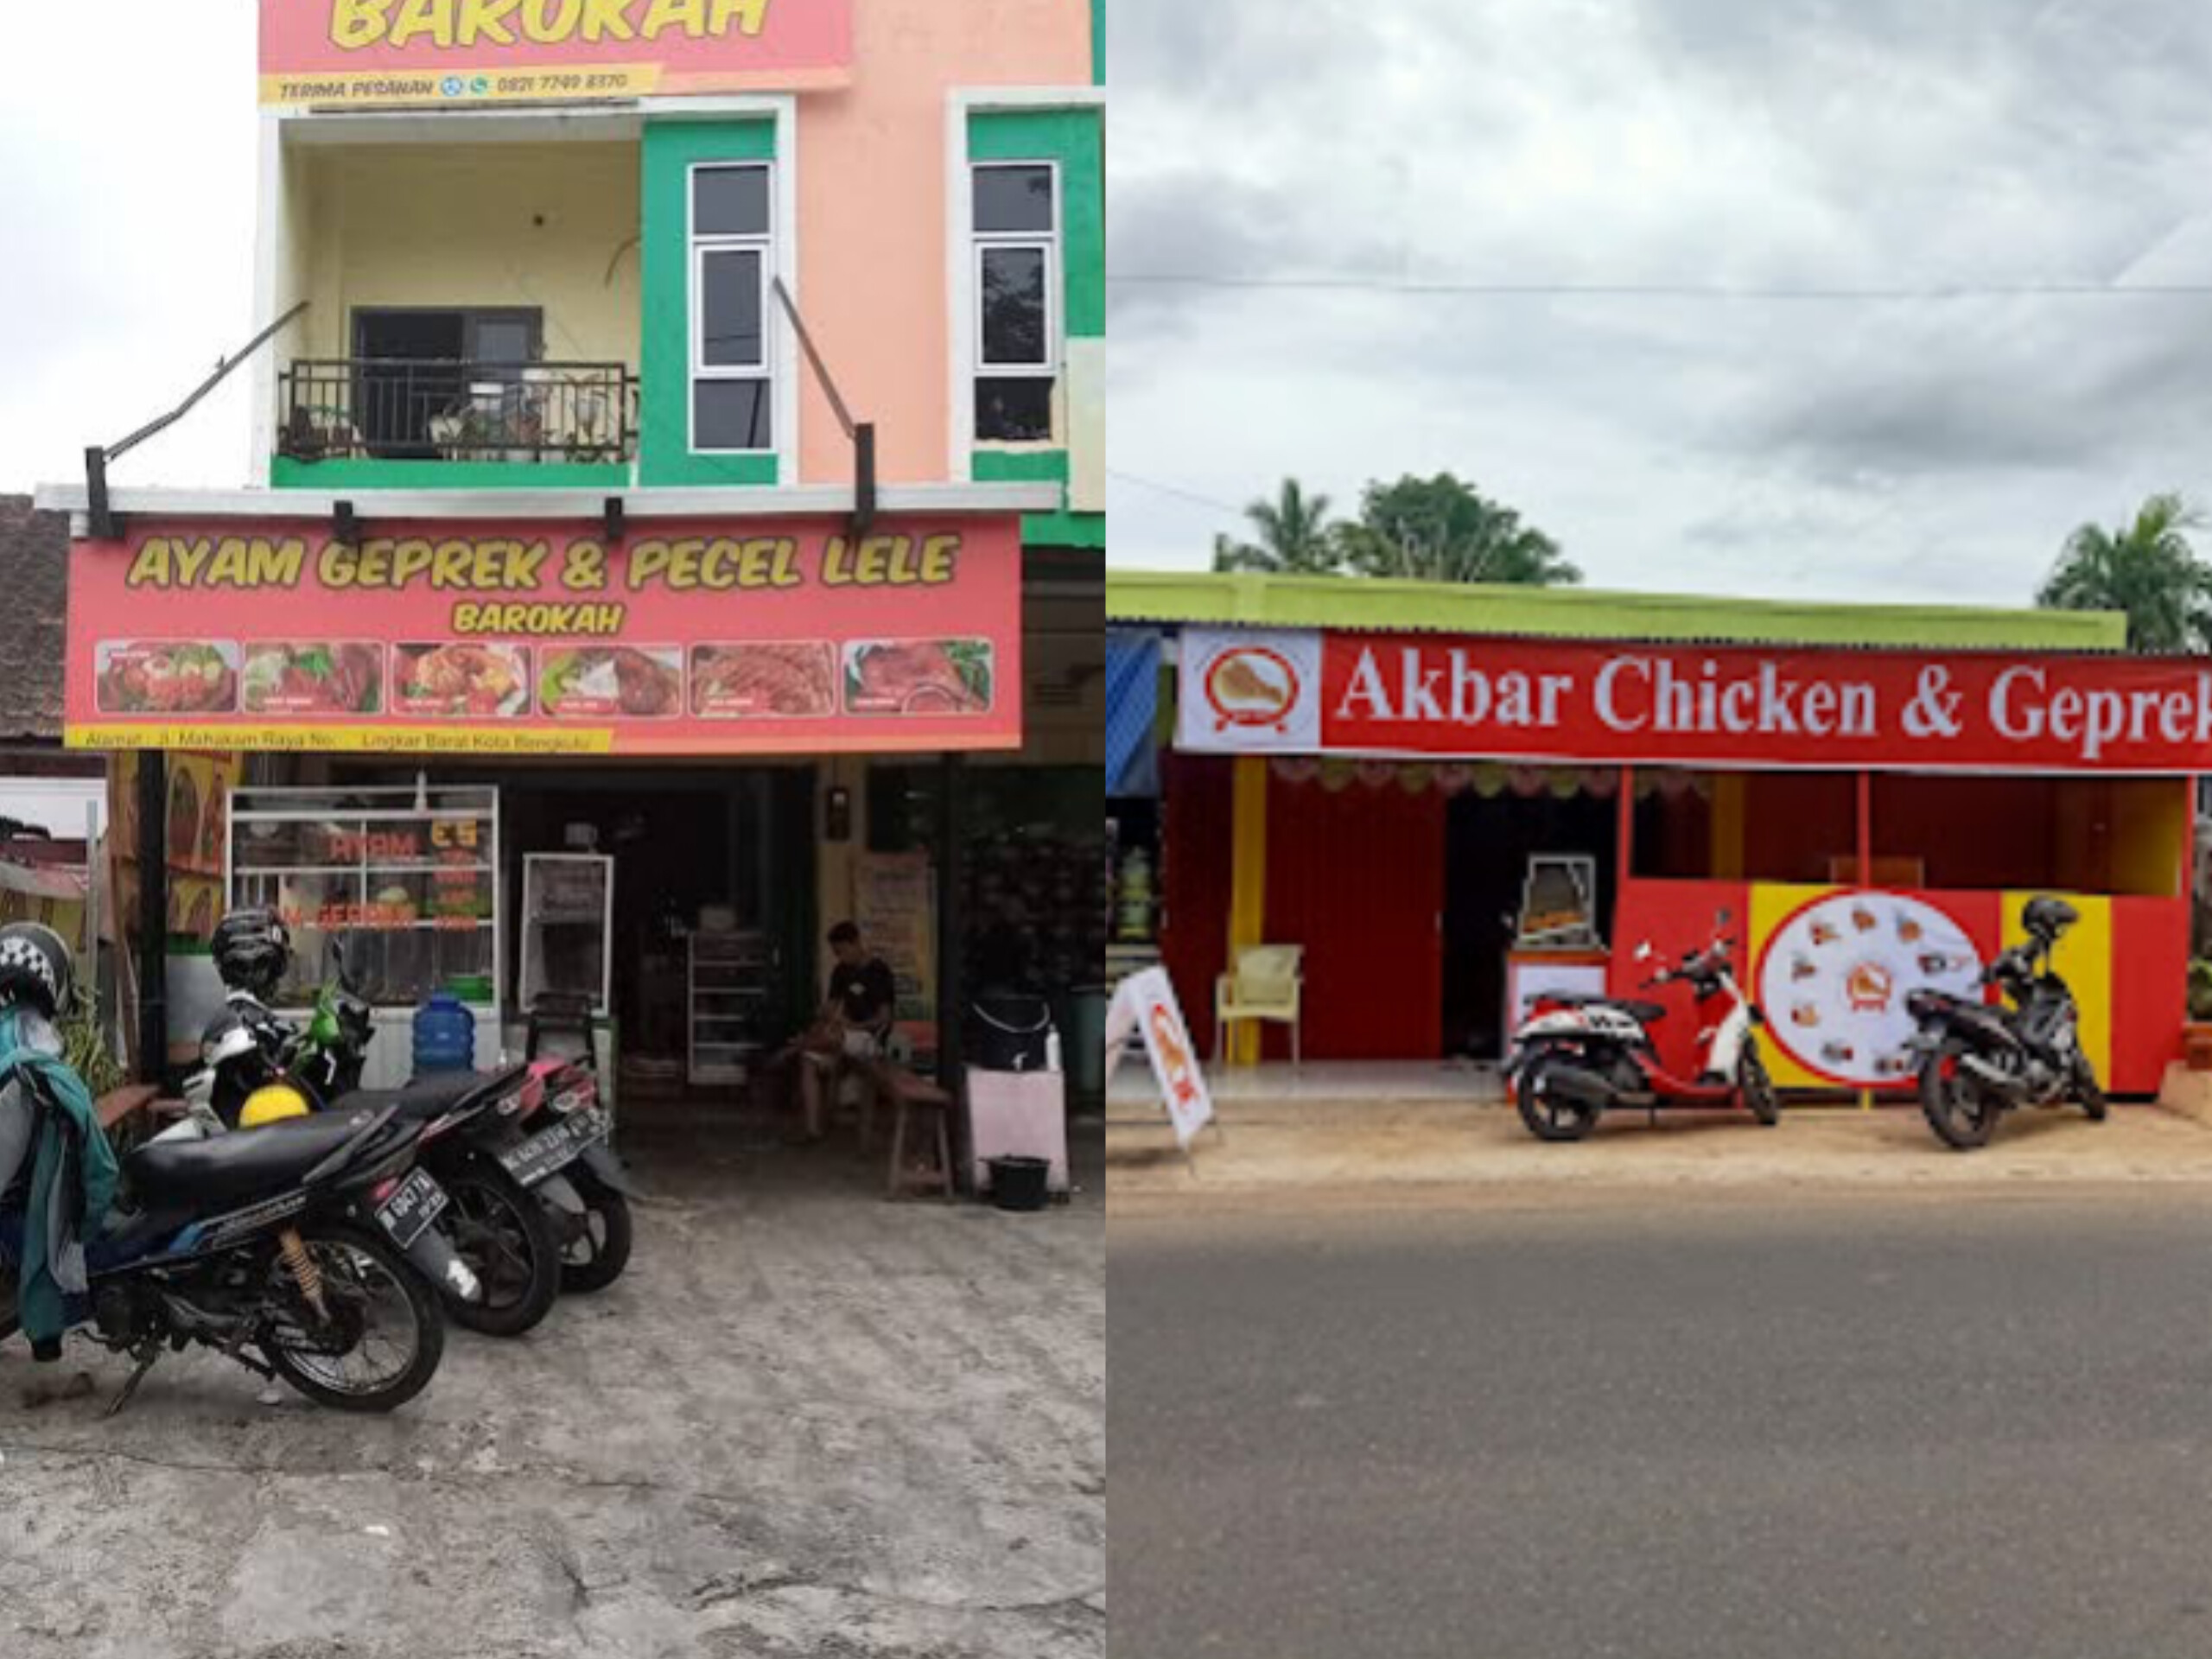 Wajib Dicoba! 7 Tempat Makan Ayam Geprek di Bengkulu yang Mendapat Rating Tertinggi di Google Maps